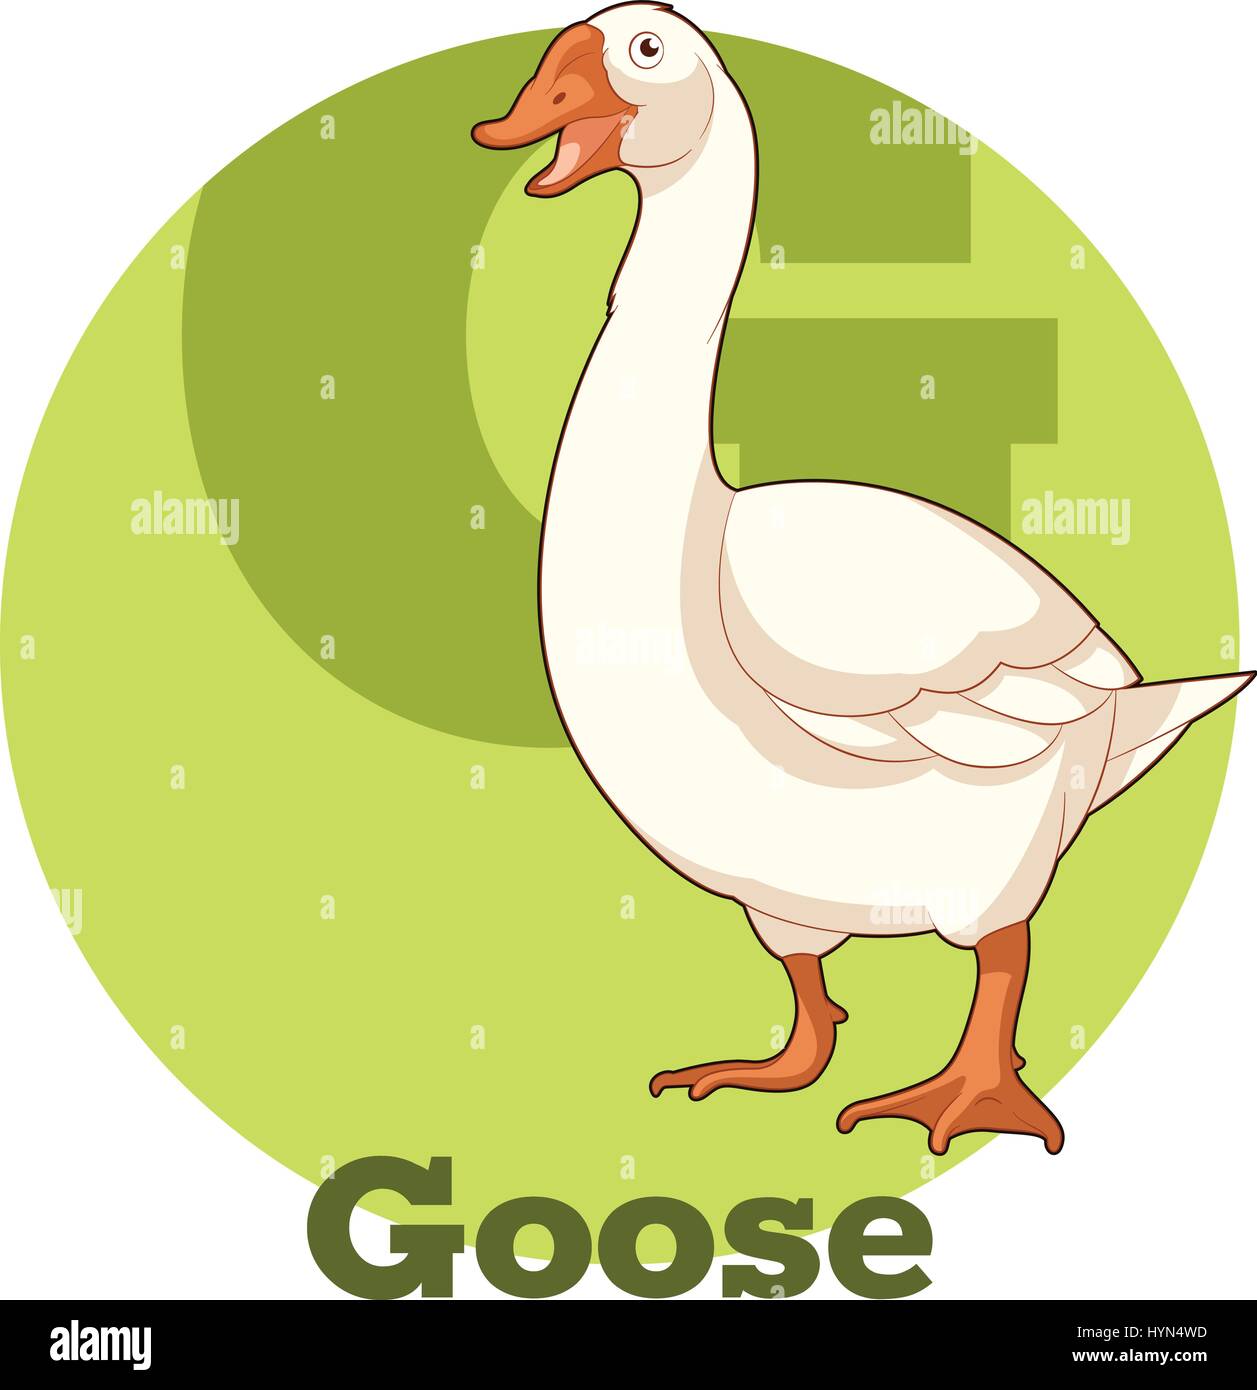 ABC Cartoon Goose Stock Vector